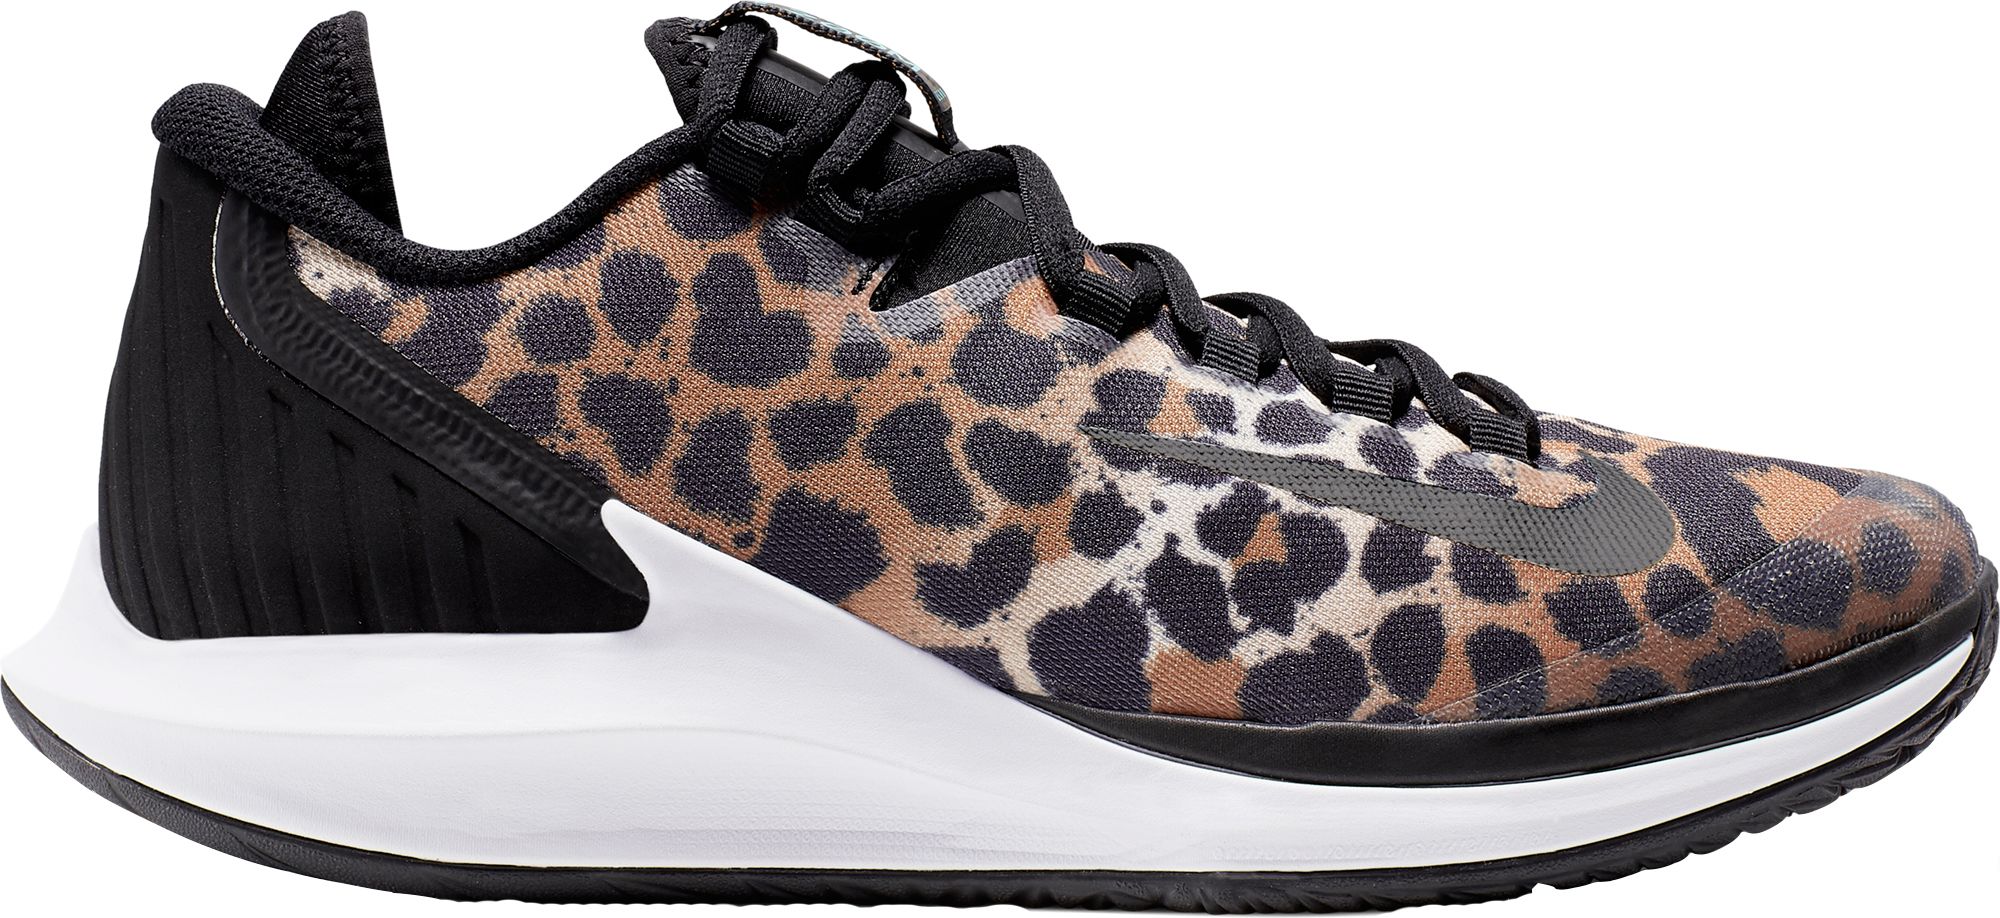 nike leopard tennis court shoes